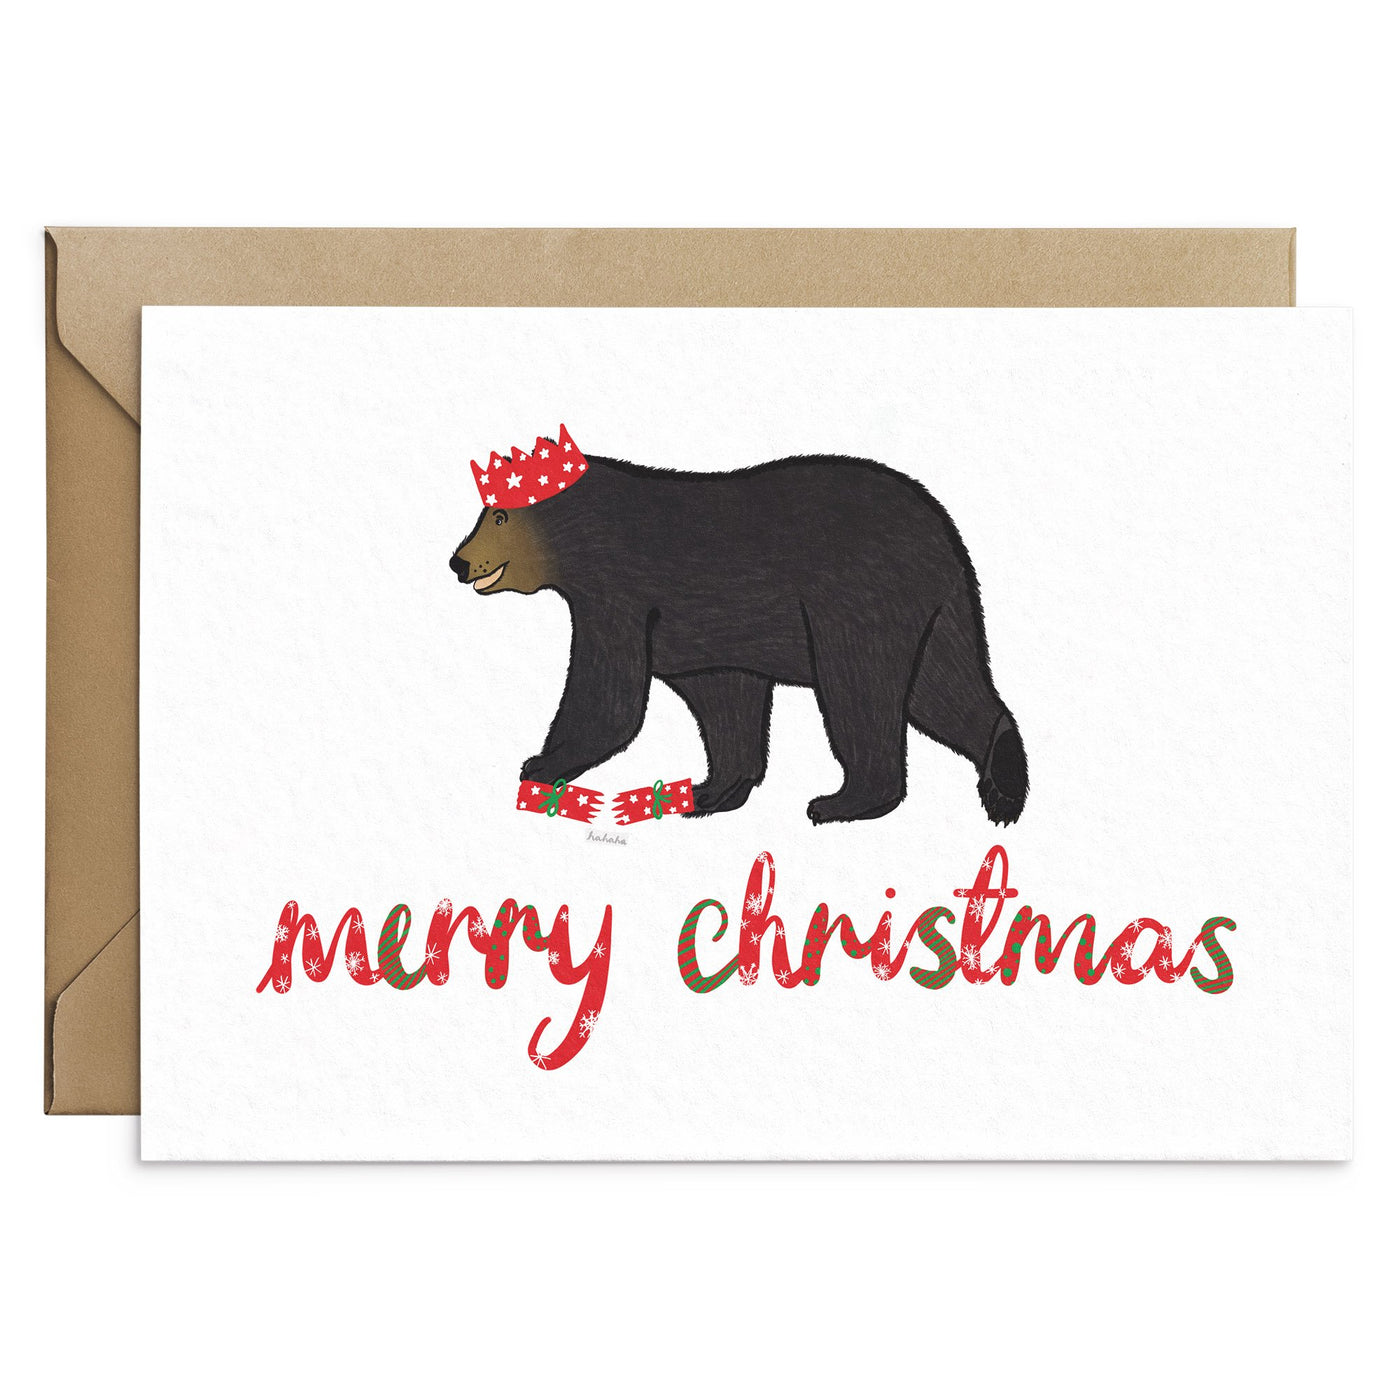 Cute Bear Christmas Card - Poppins & Co.